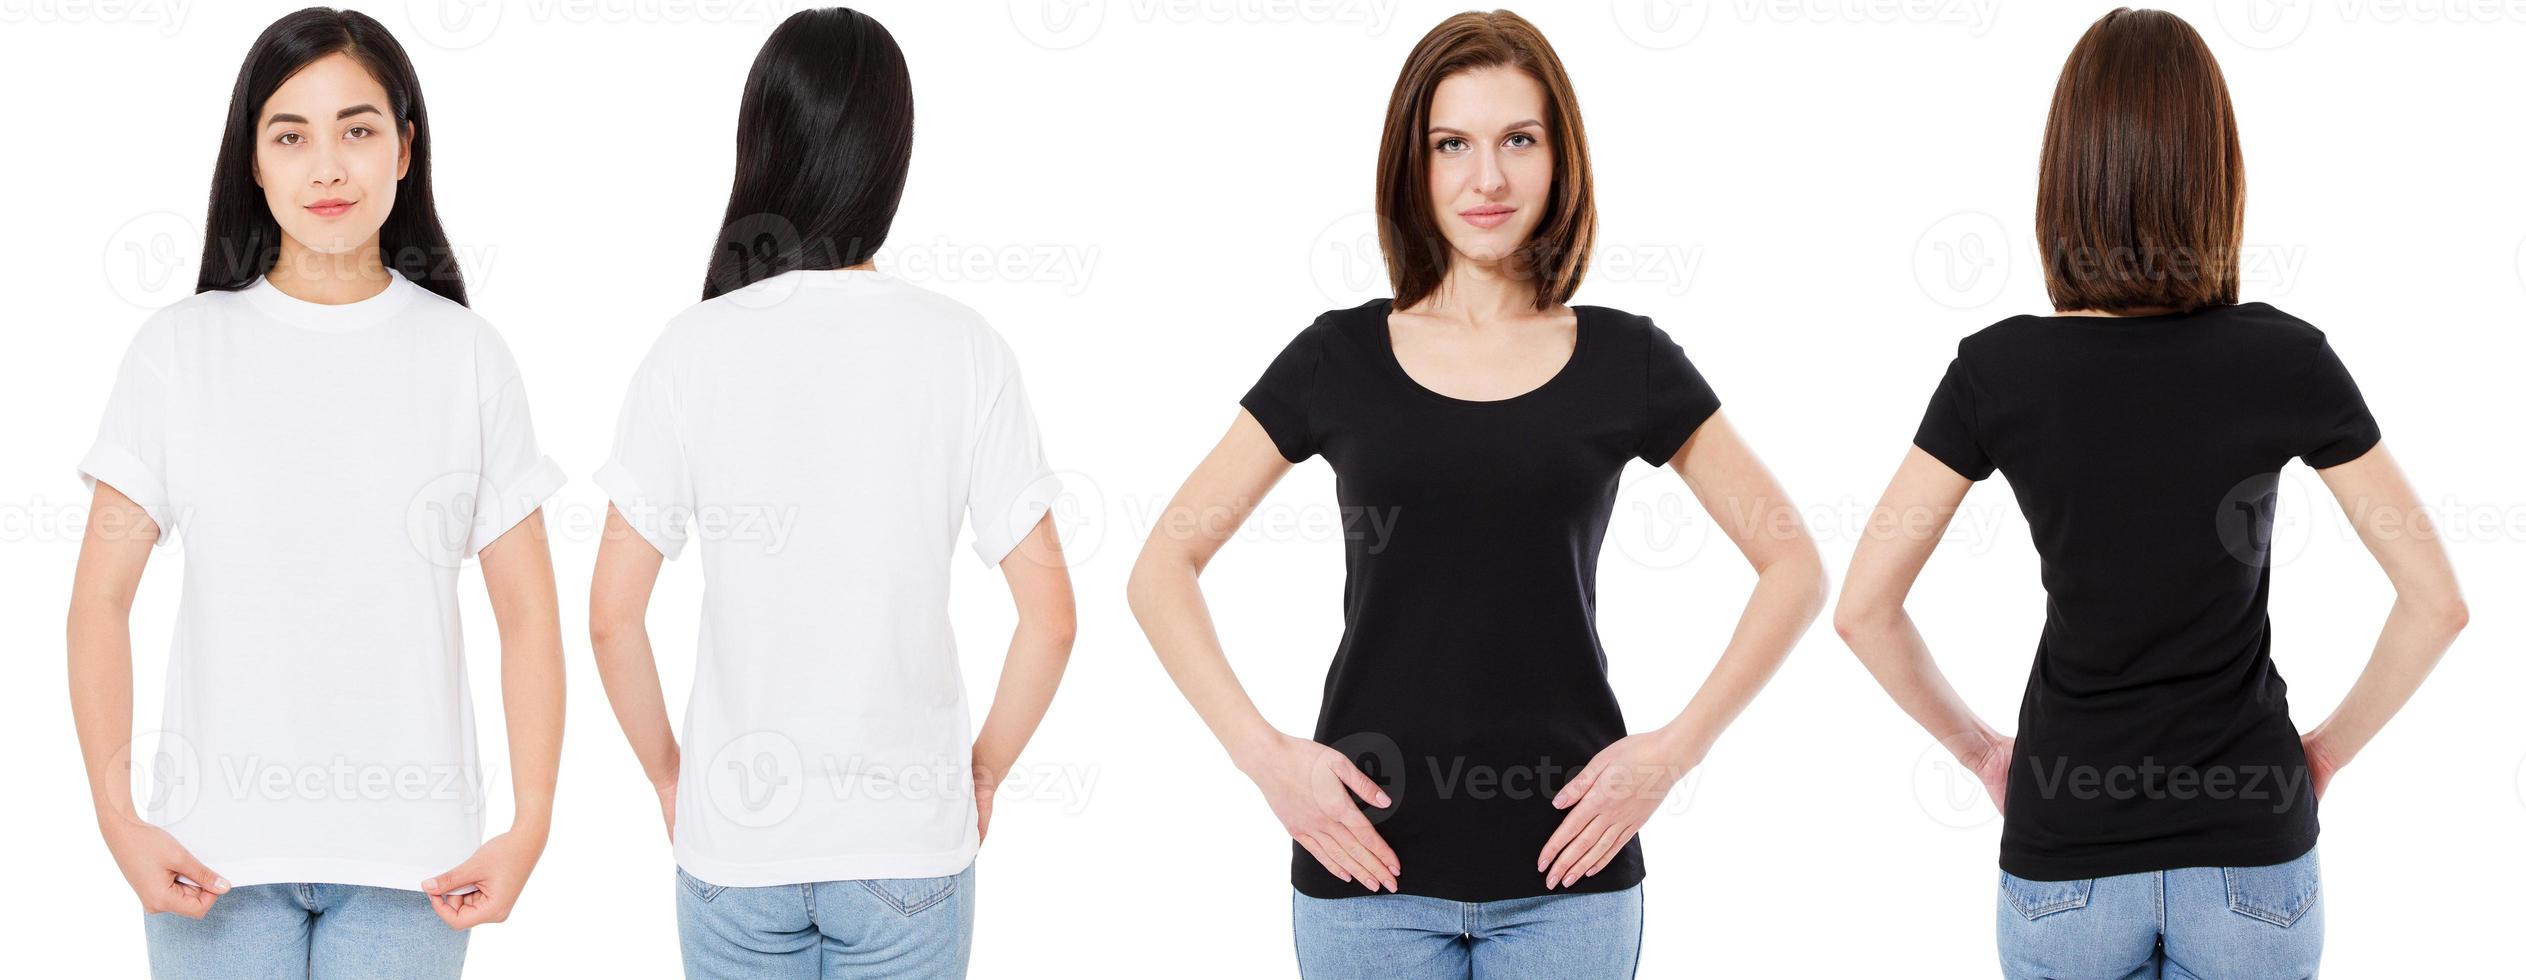 femme coréenne et blanche en t-shirt blanc et noir vierge vues avant et arrière, maquette, modèle de conception photo